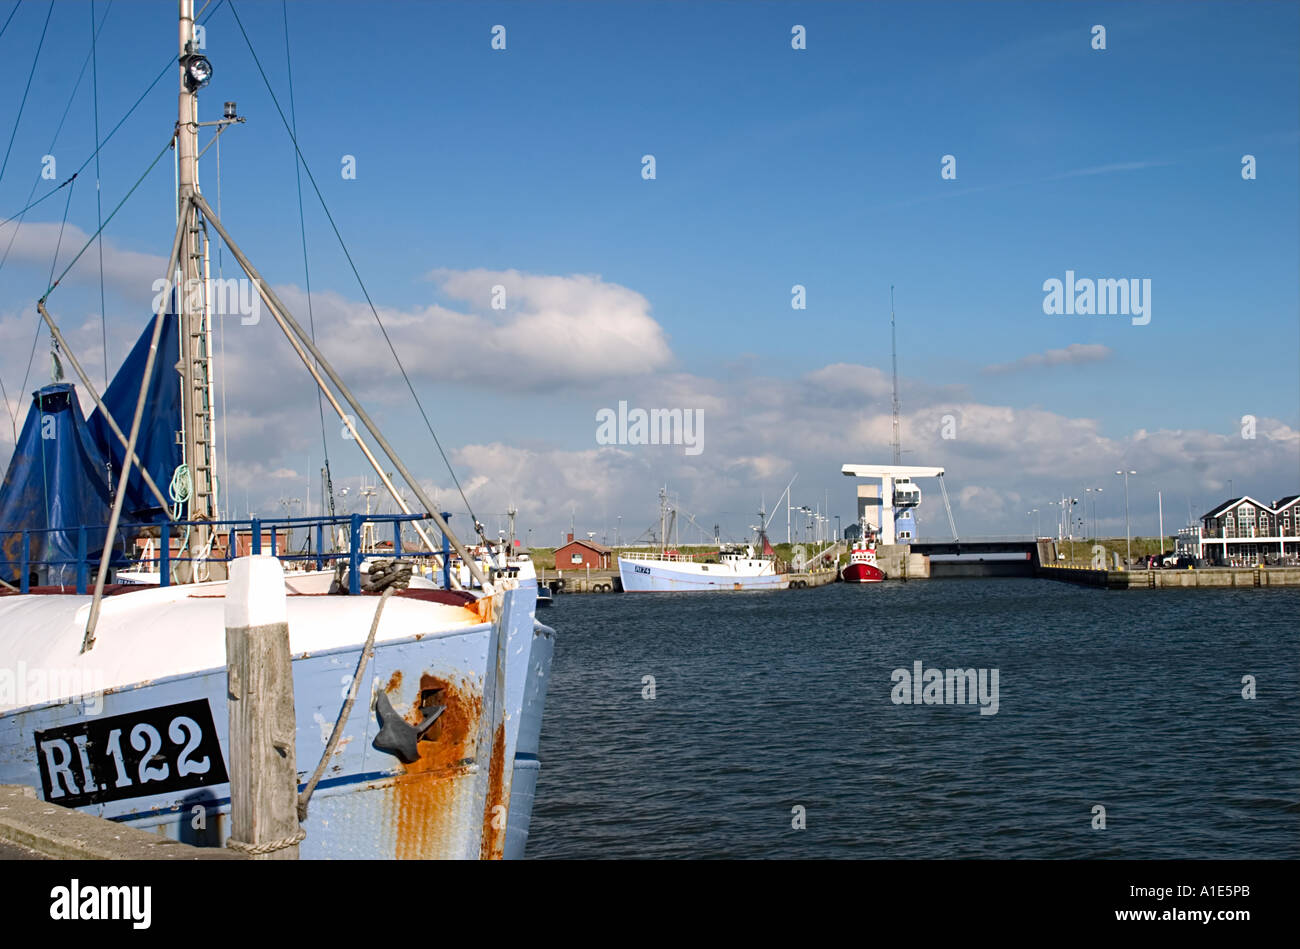 Hvide Sande fishing harbour Denmark Stock Photo